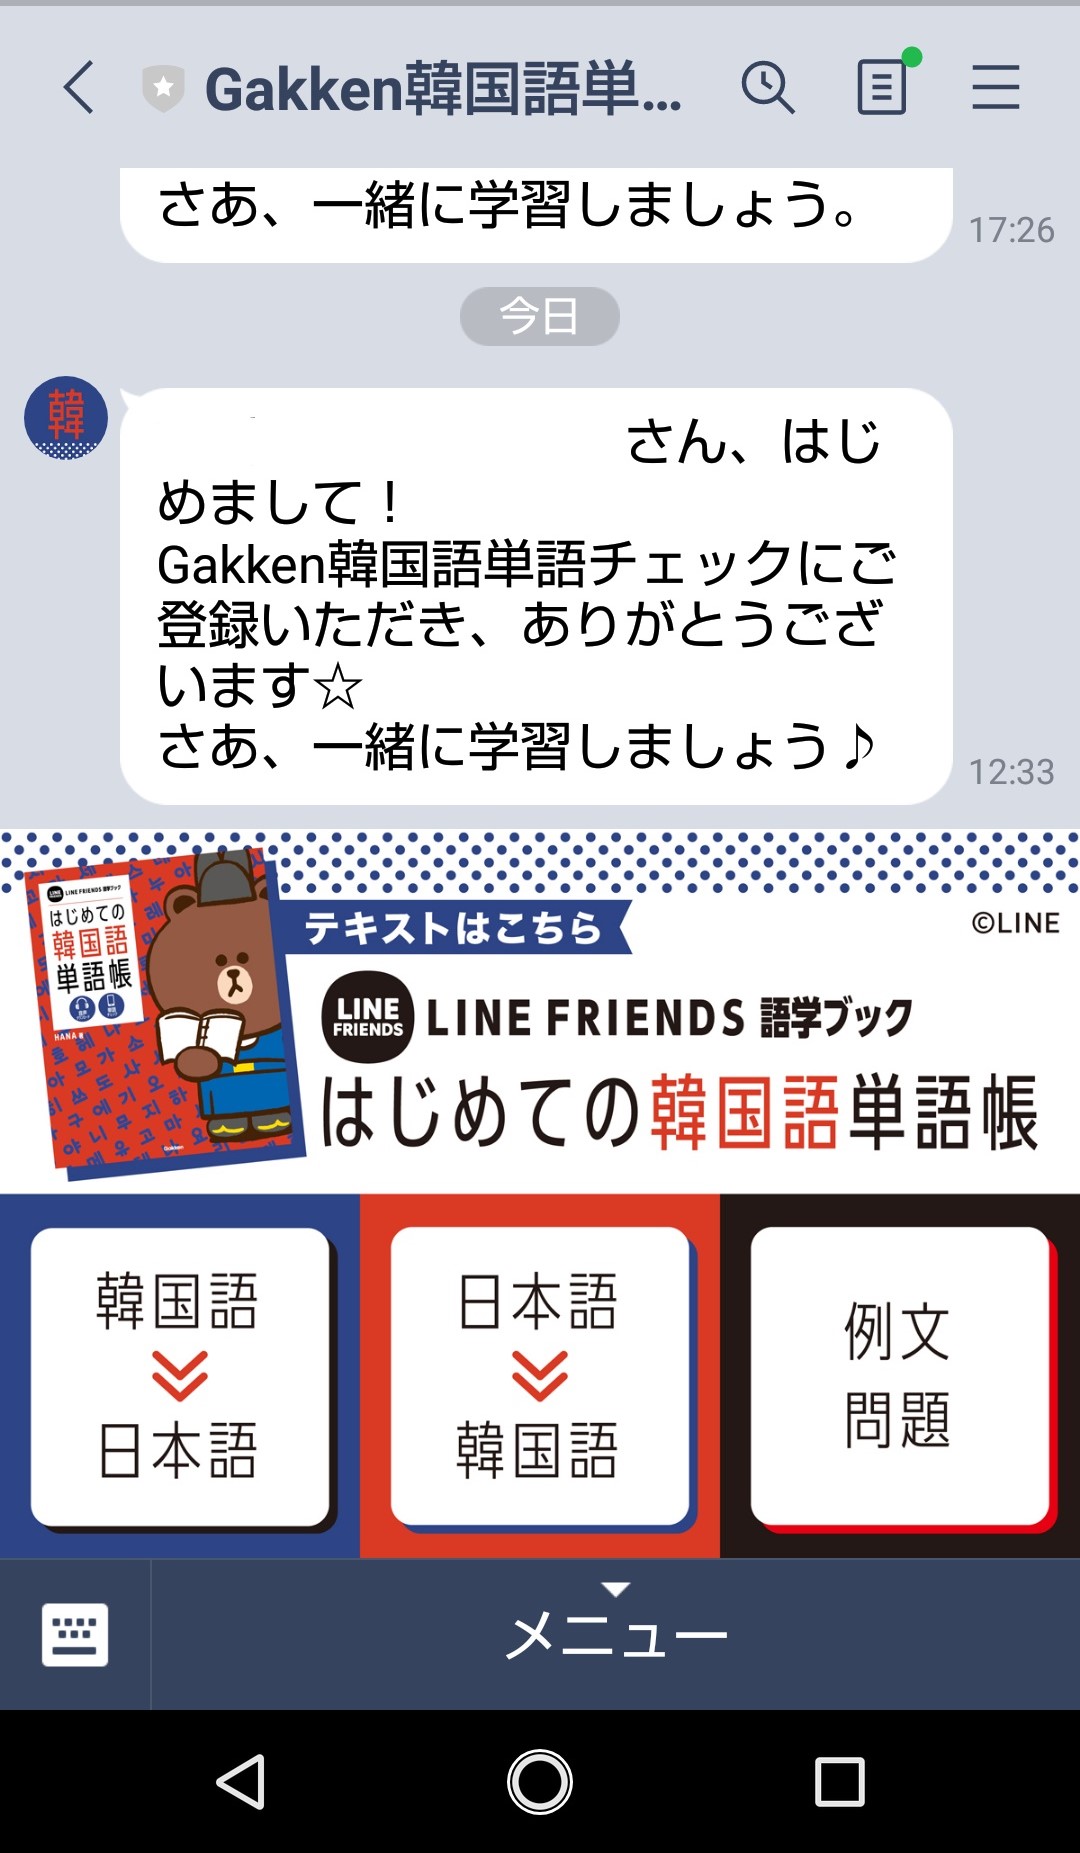 「Gakken韓国語単語チェック」で早押しクイズ学習　画像